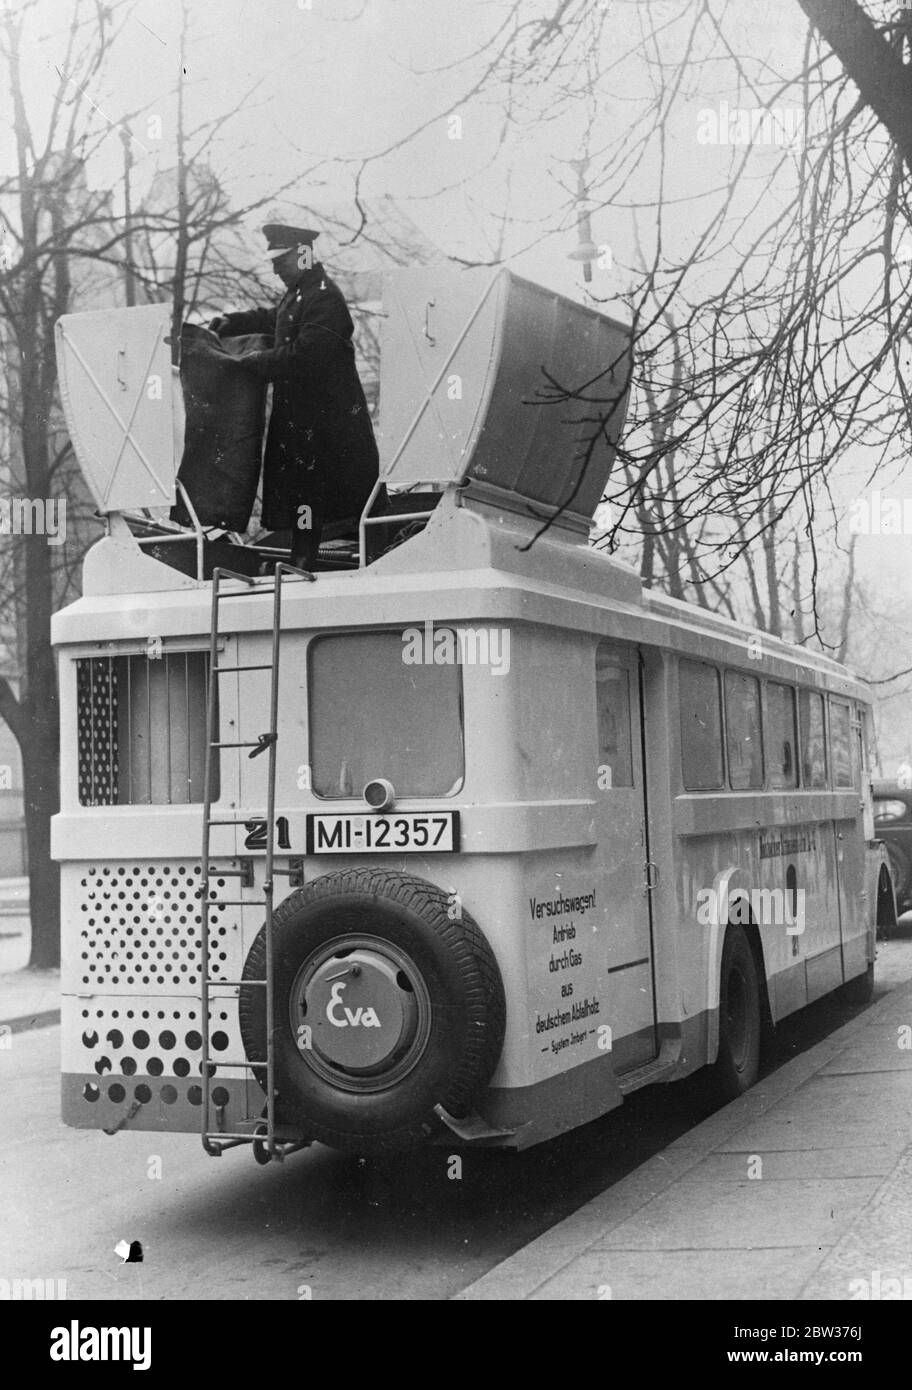 Motorbus, der von Holz angetrieben wird. Einsparung von achtzig Prozent mit neuem Kraftstoff . Ein mit Holz abgesaugten Gas betriebener Autobus wurde in Rostock in den öffentlichen Dienst gestellt. Das Holz wird durch einen speziellen Ofen, mit dem das Fahrzeug ausgestattet ist, zu Gas gemacht. Es wird geschätzt, dass damit eine Wirtschaftlichkeit von 70 bis 80 Prozent bei den Betriebskosten bewirkt werden kann. Foto zeigt ; der neue Motorbus mit seinem Gas aus Holz Apparat . 18 Dezember 1933 Stockfoto